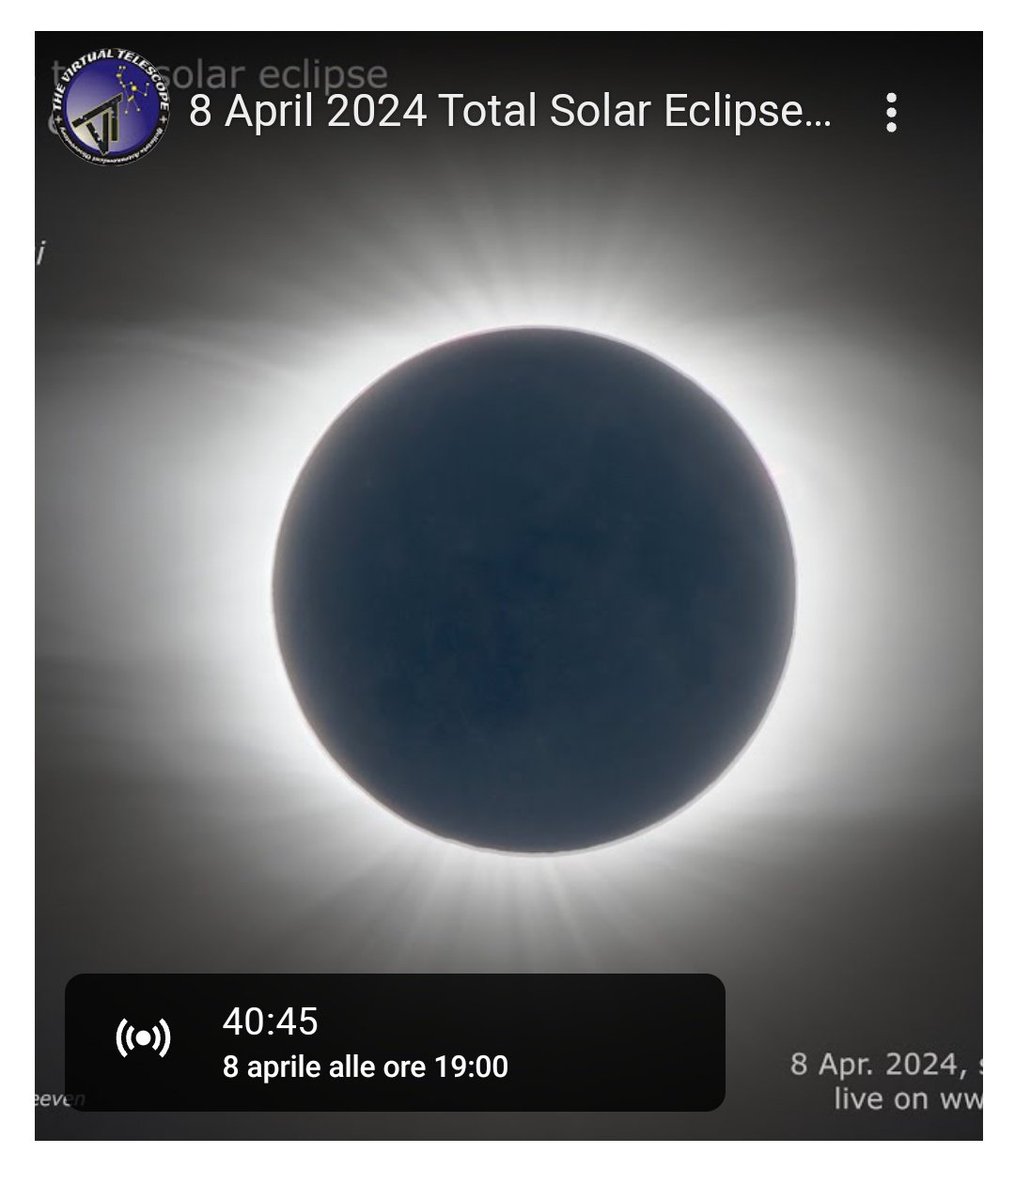 Pronta per la diretta online sull' #eclissi.
Per la #FineDelMondo, ancora no!